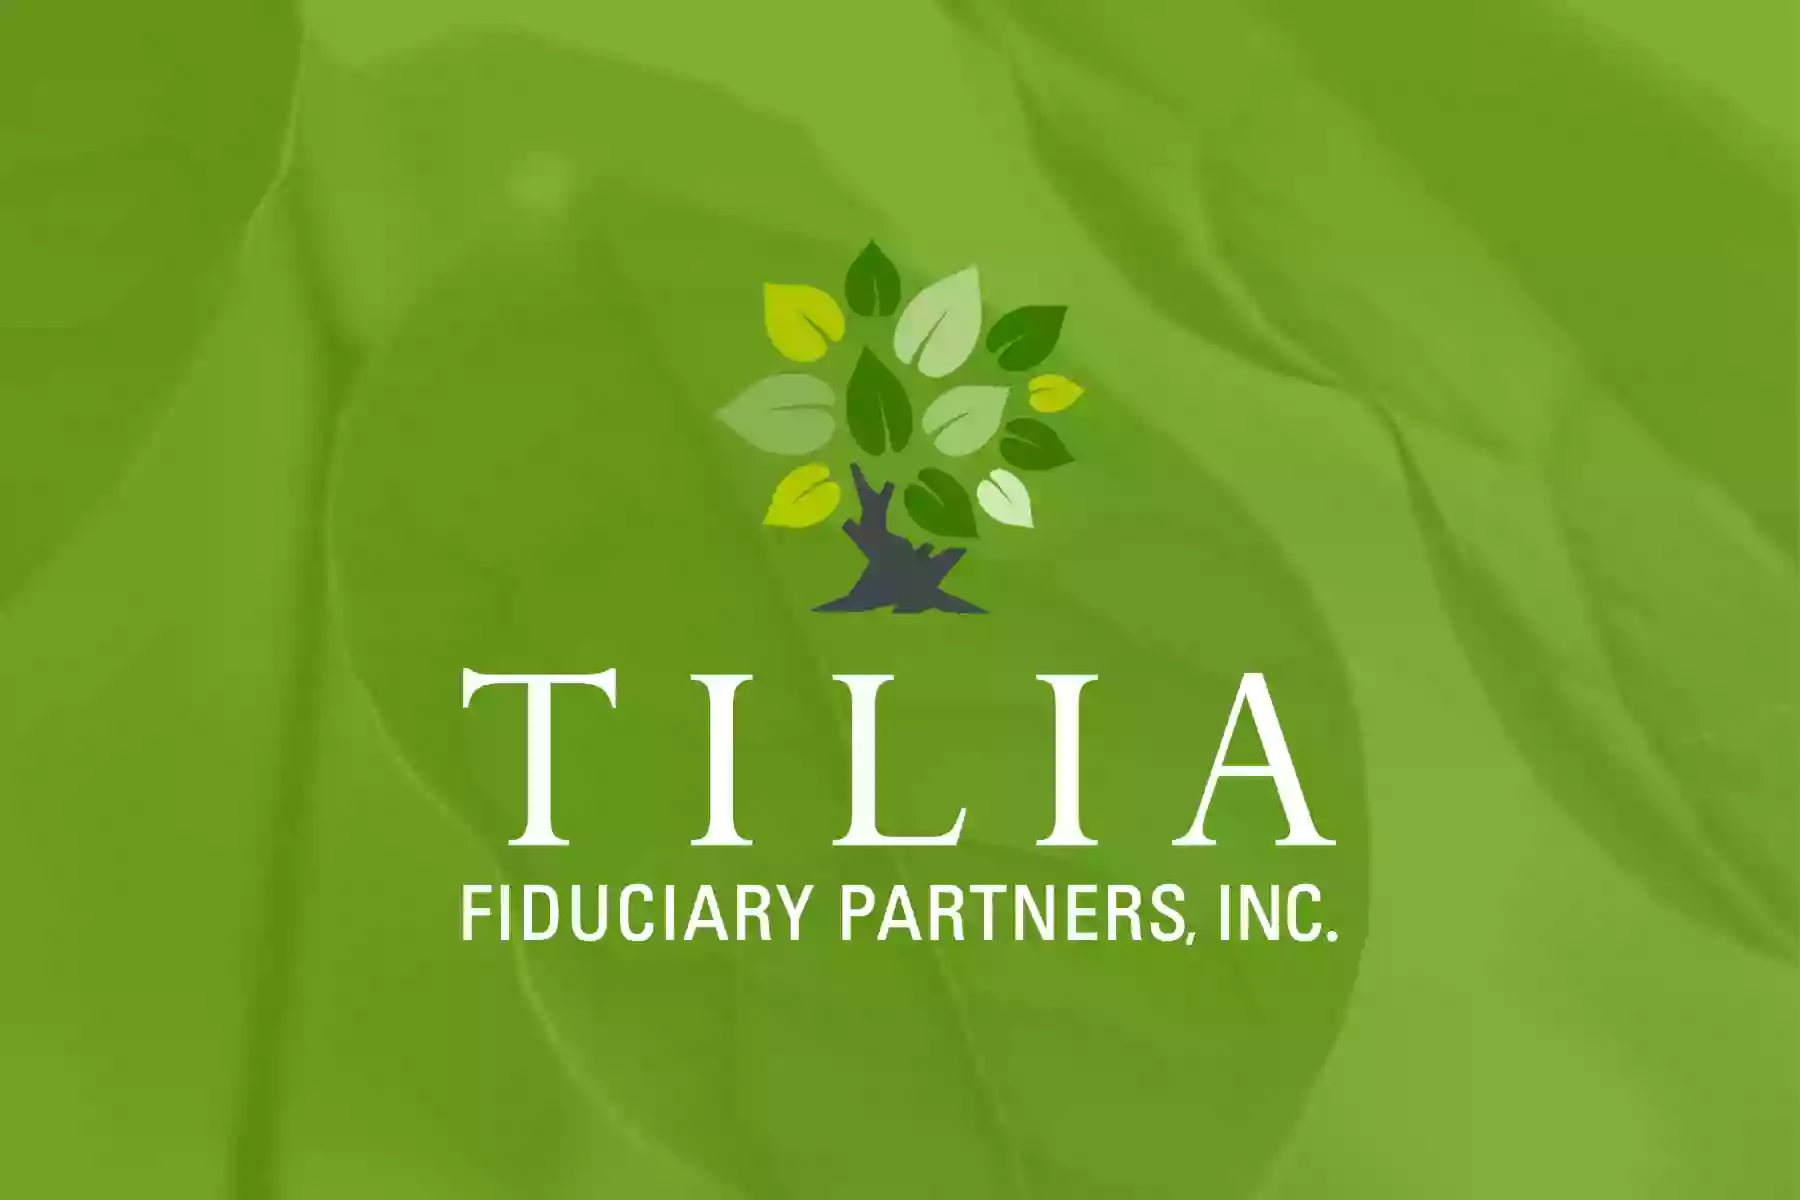 Tilia Fiduciary Partners, Inc.